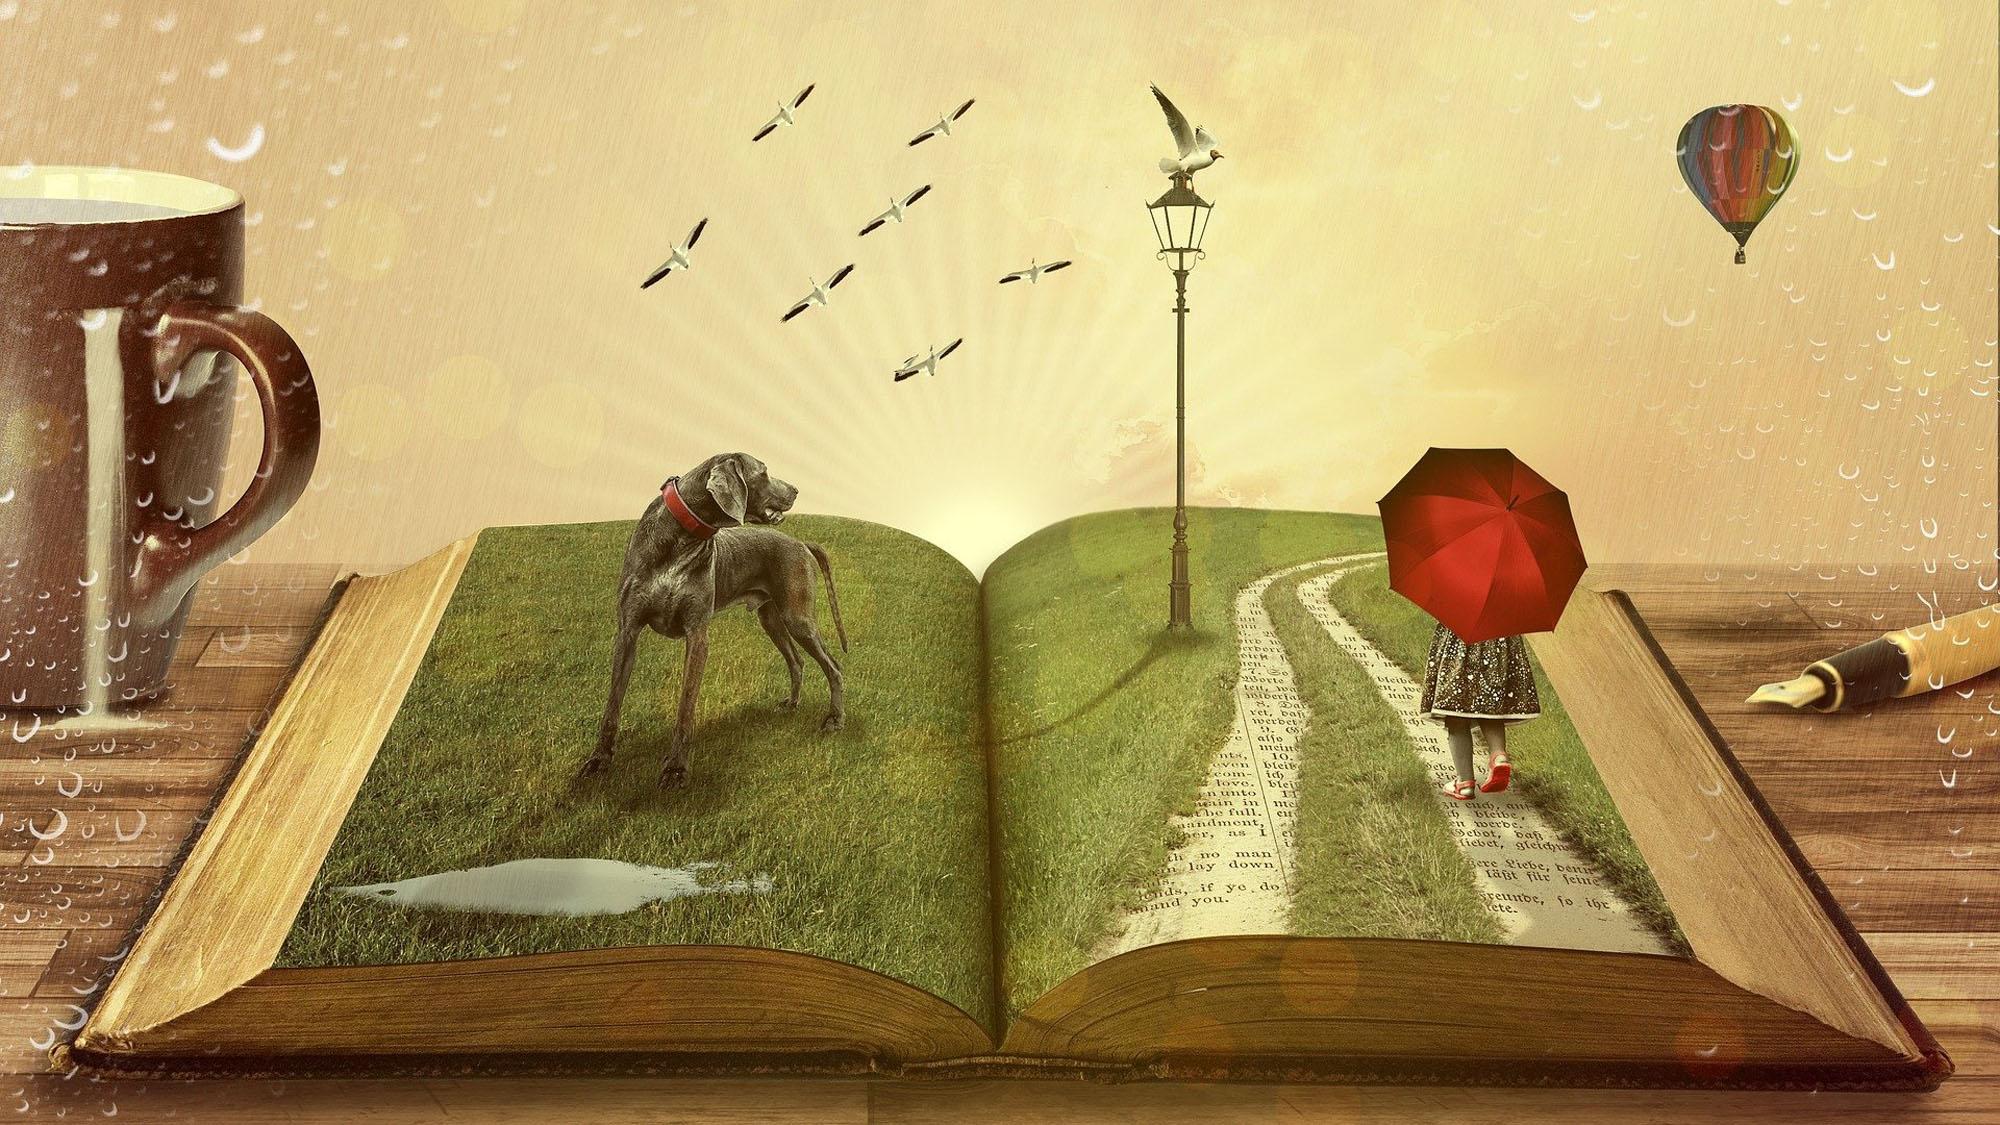 Een opengeslagen boek dat tot leven komt (een afbeelding van David Mark via Pixabay). Op de linkerpagina van het opengeslagen boek staat een grote grijze hond bij een plas water. Rechts wandelt een meisje met een rode paraplu door een drassig grasveld.